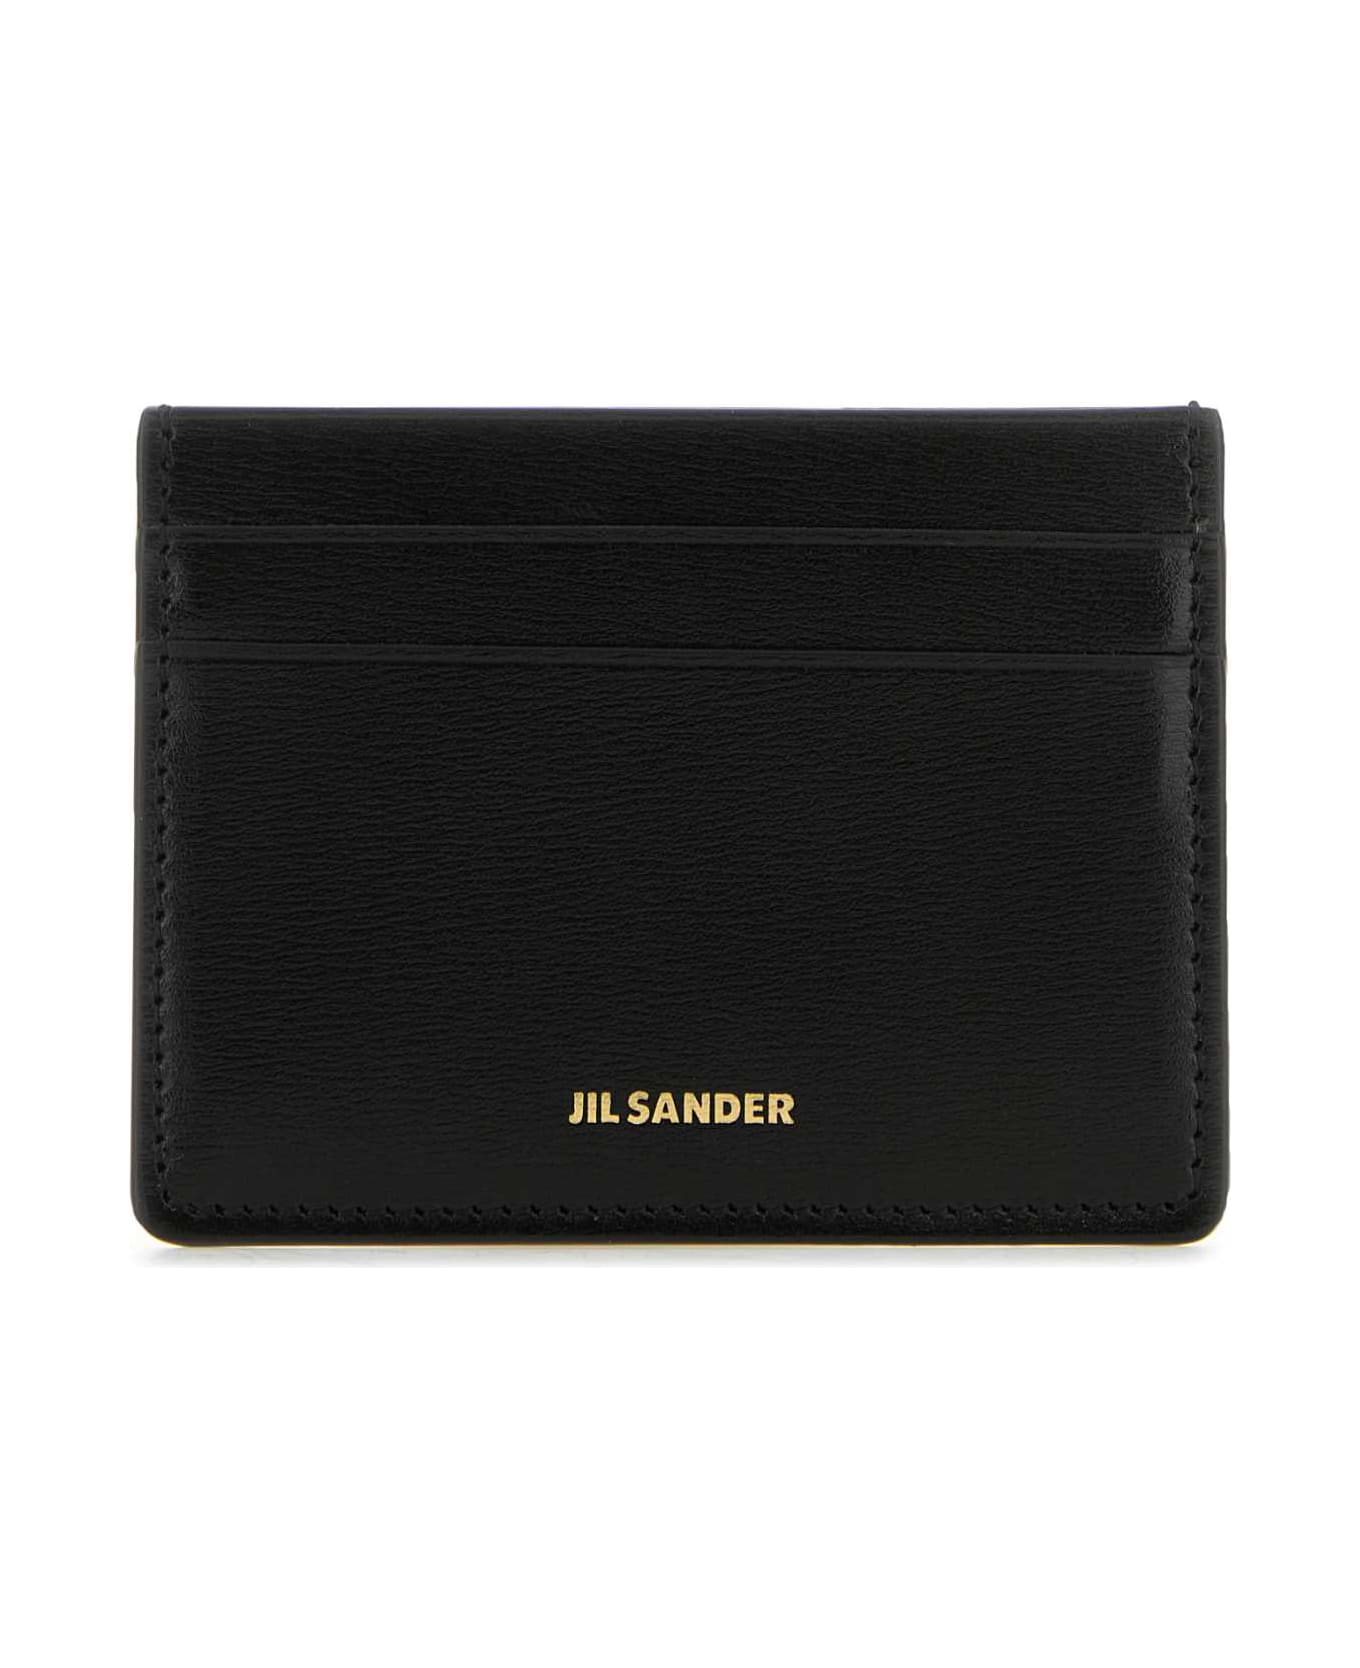 Jil Sander Black Leather Card Holder - 001